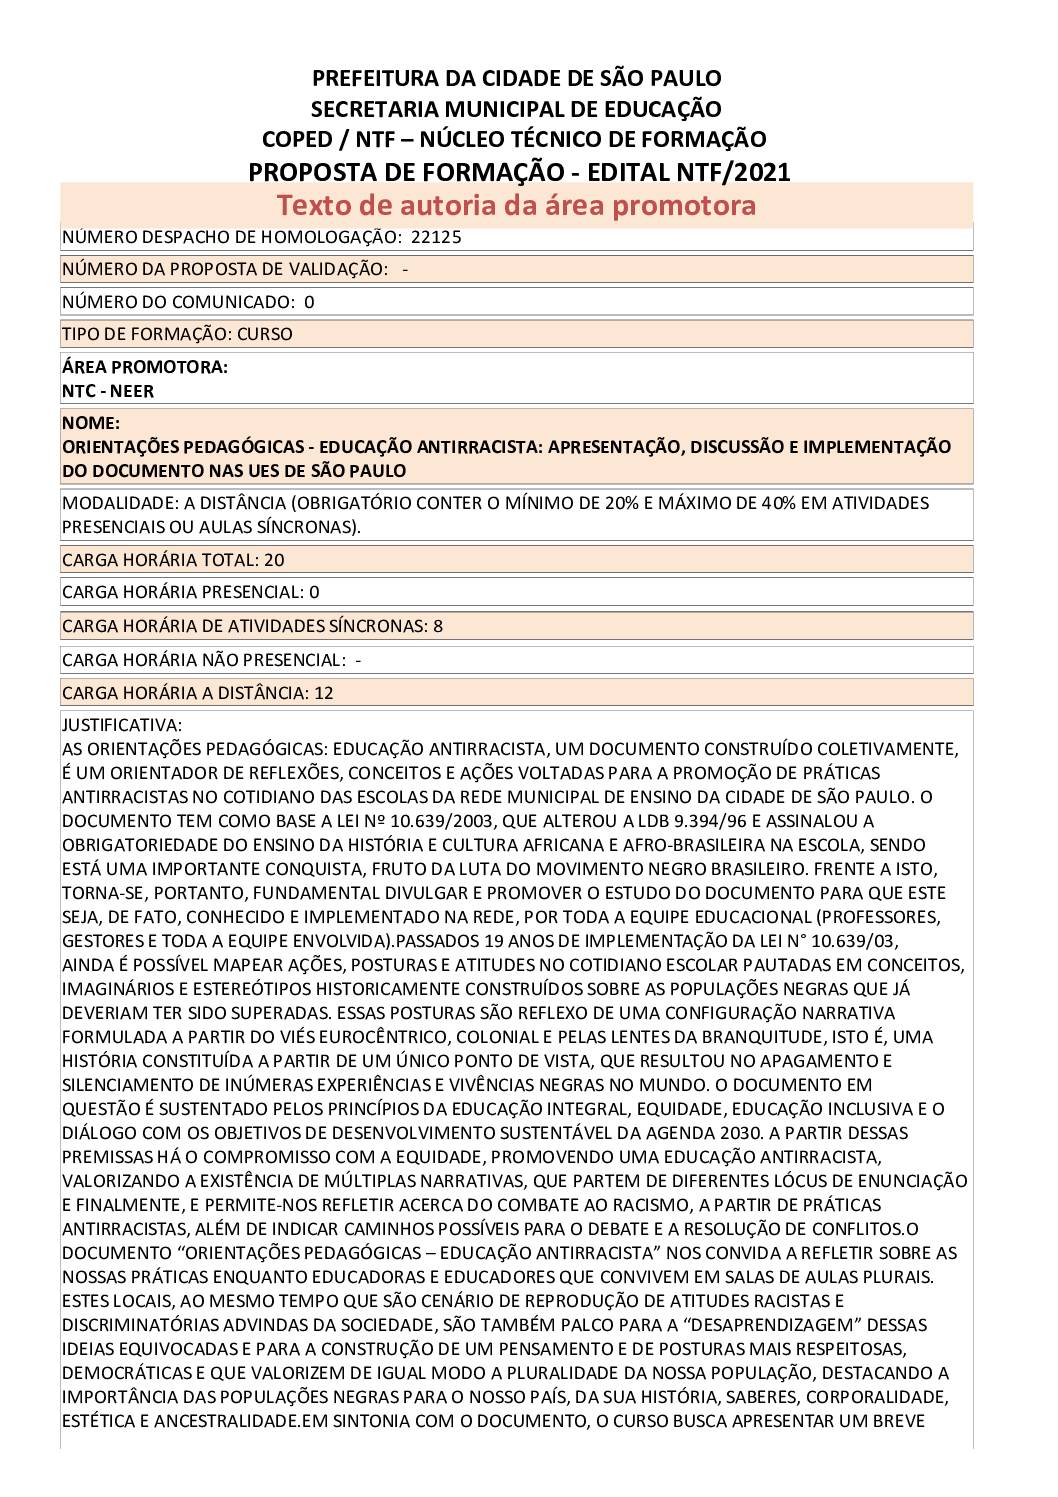 PDF com informações sobre o curso: ORIENTAÇÕES PEDAGÓGICAS - EDUCAÇÃO ANTIRRACISTA: APRESENTAÇÃO, DISCUSSÃO E IMPLEMENTAÇÃO DO DOCUMENTO NAS UES DE SÃO PAULO.